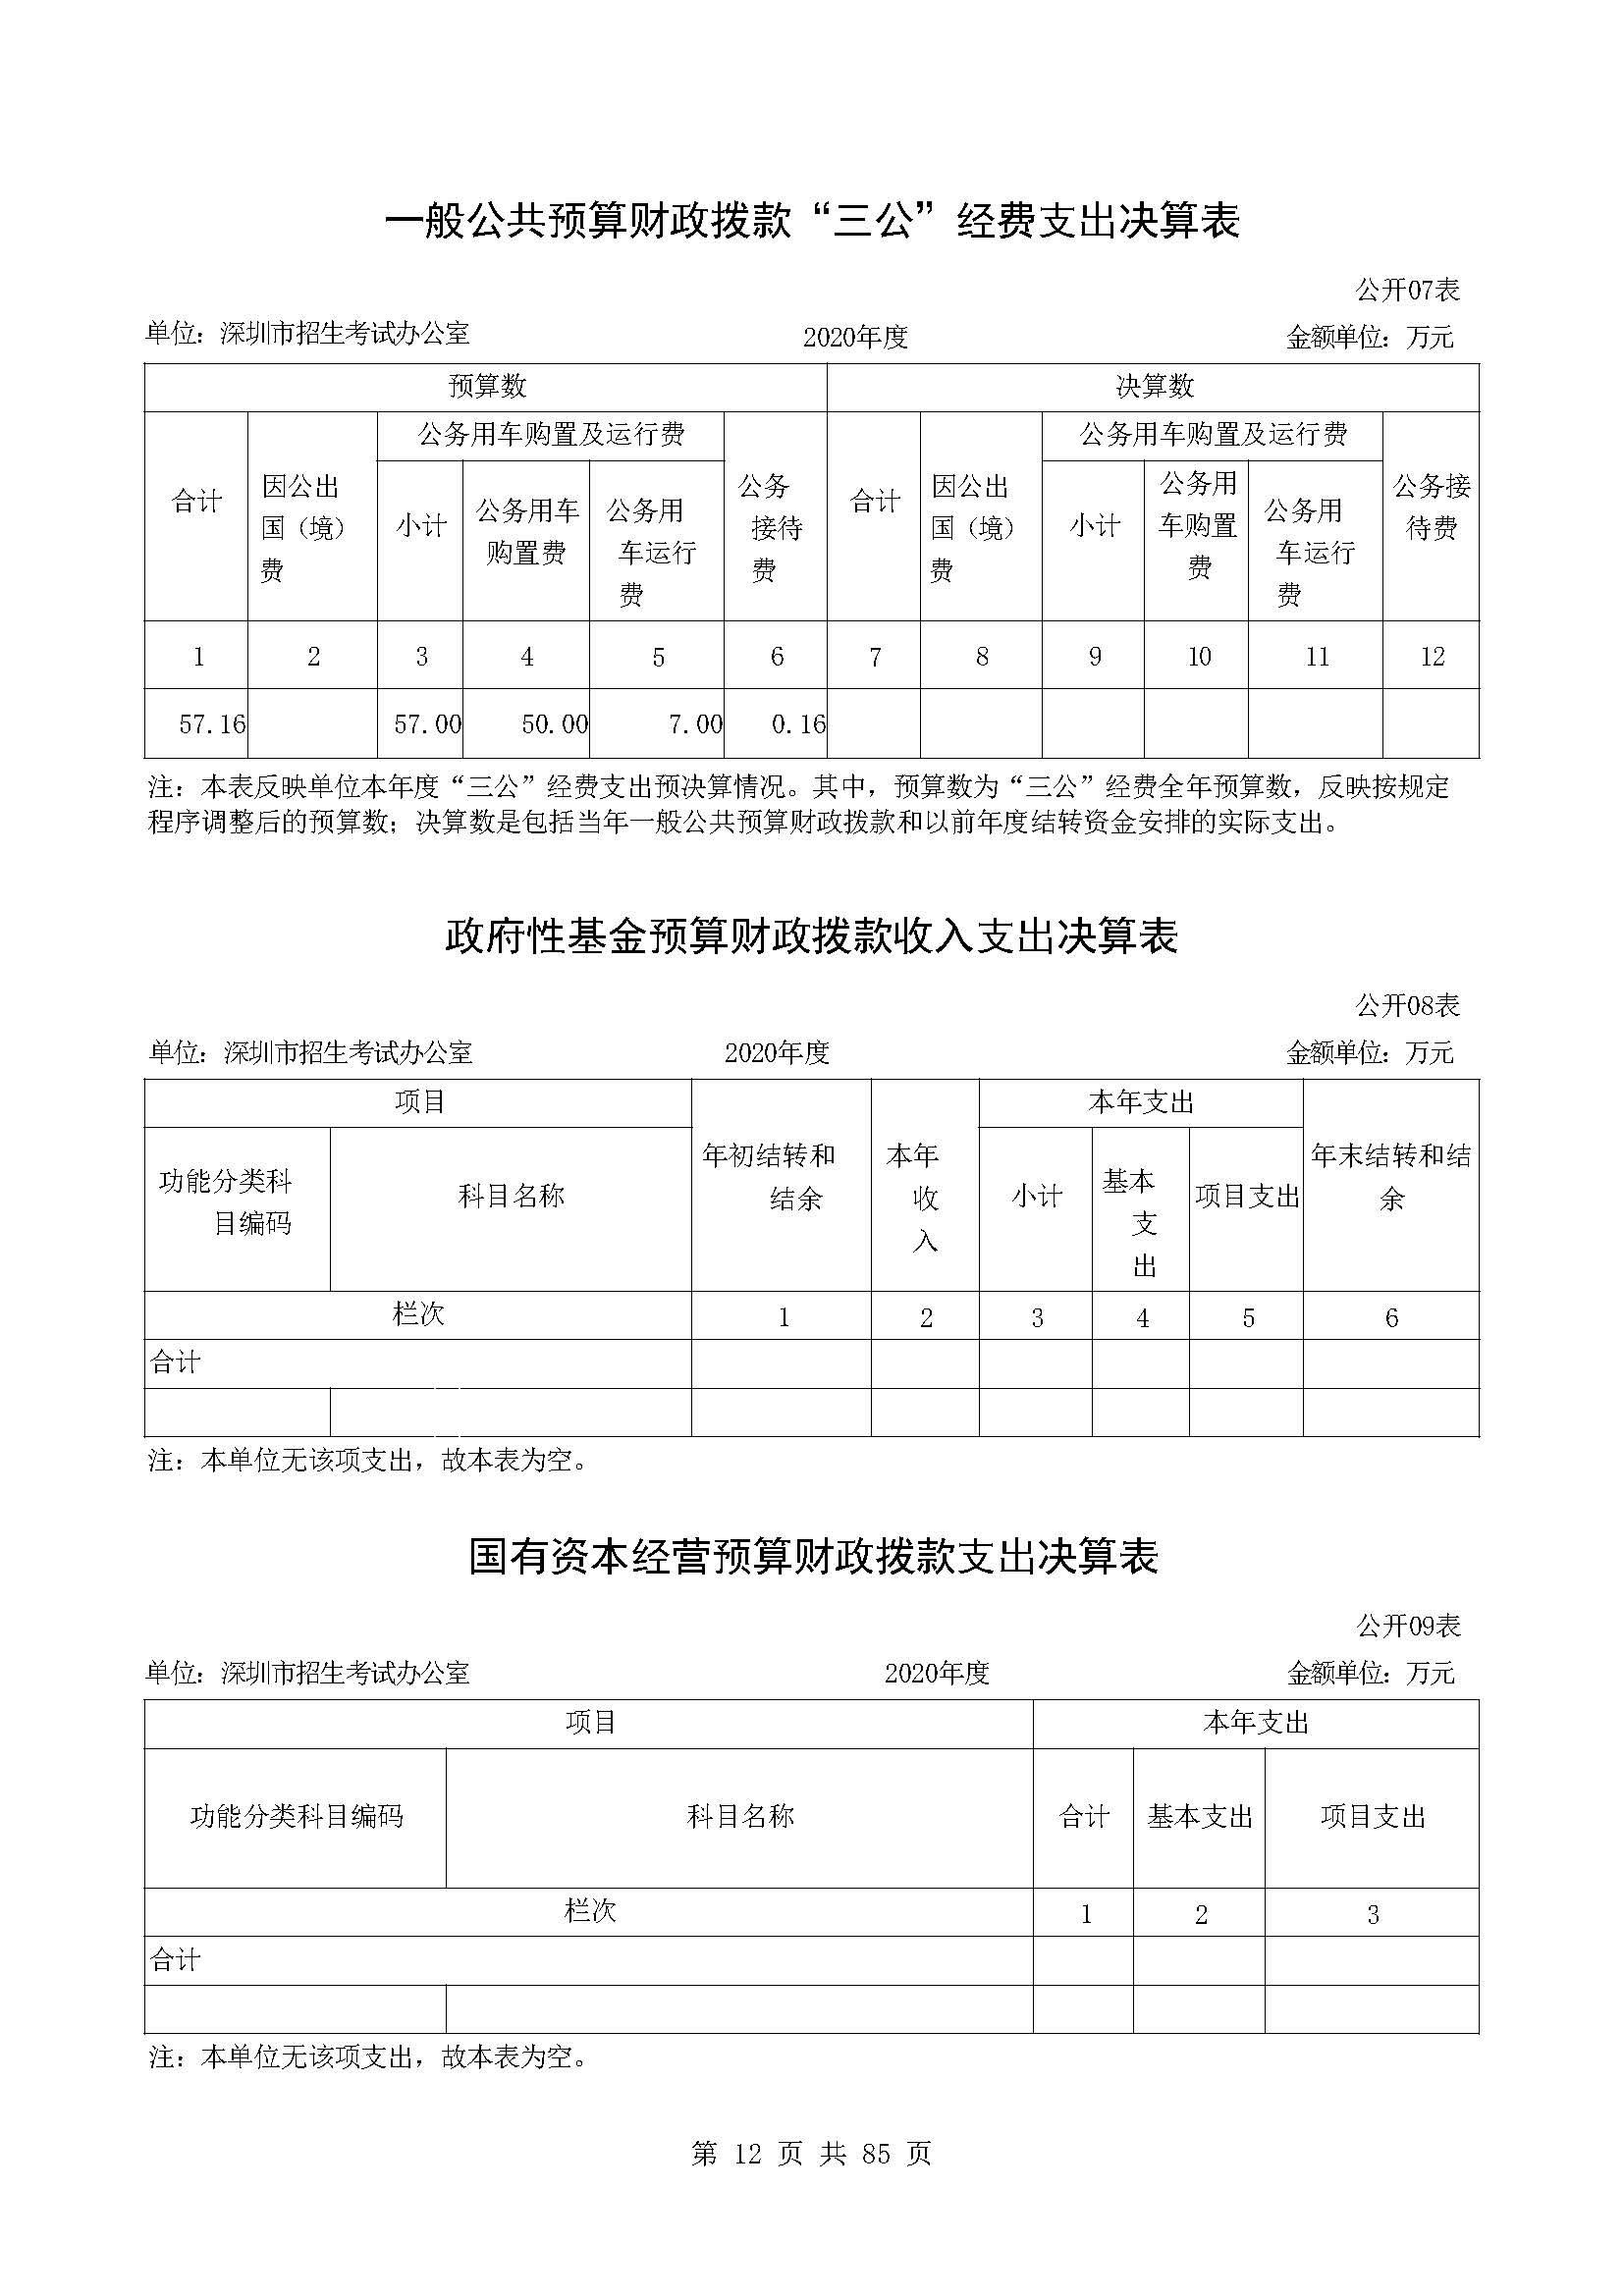 深圳市招生考试办公室2020年度部门决算_页面_13.jpg